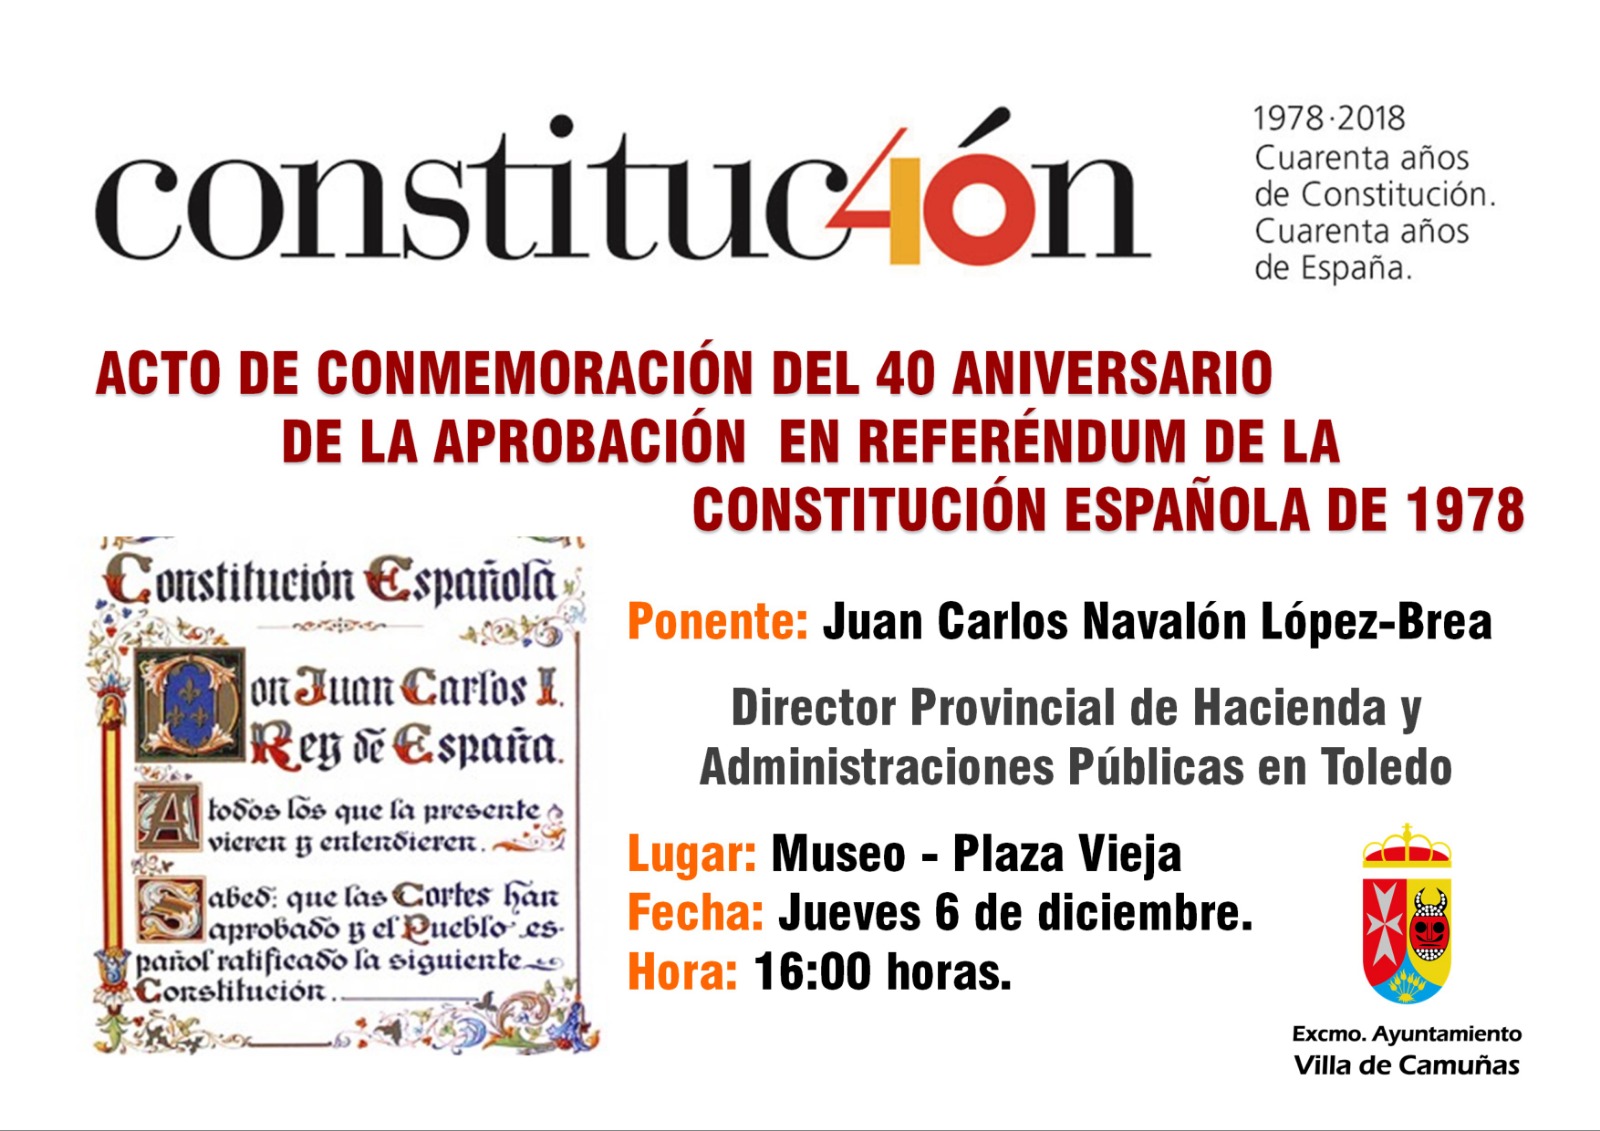 ACTO DE CONMEMORACION DEL 40 ANIVERARIO DE LA CONSTITUCION DE 1978